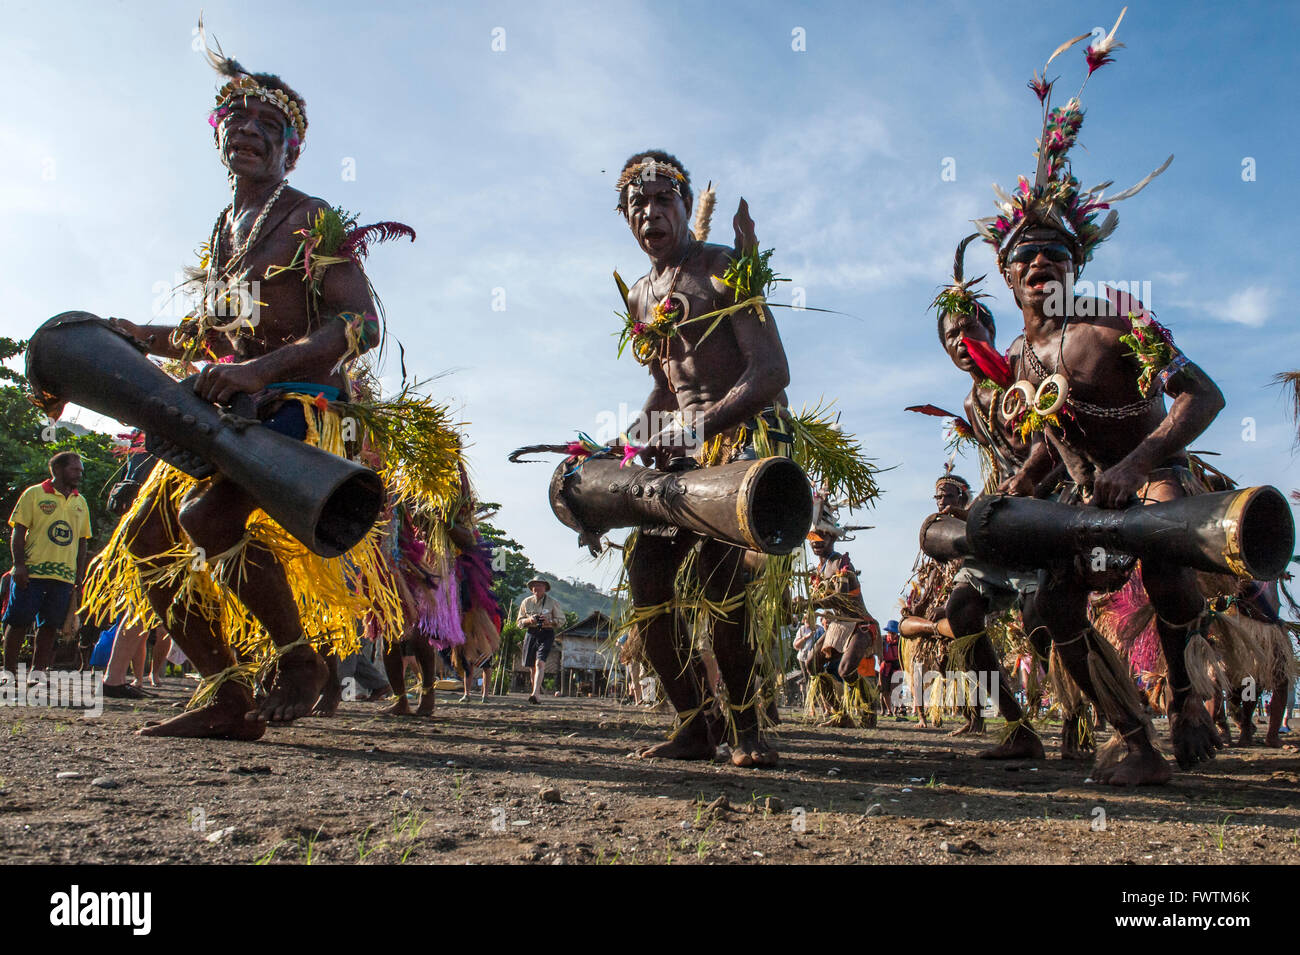 Danseurs locaux hommes effectuant une danse traditionnelle Tolokiwa, Papouasie Nouvelle Guinée Banque D'Images